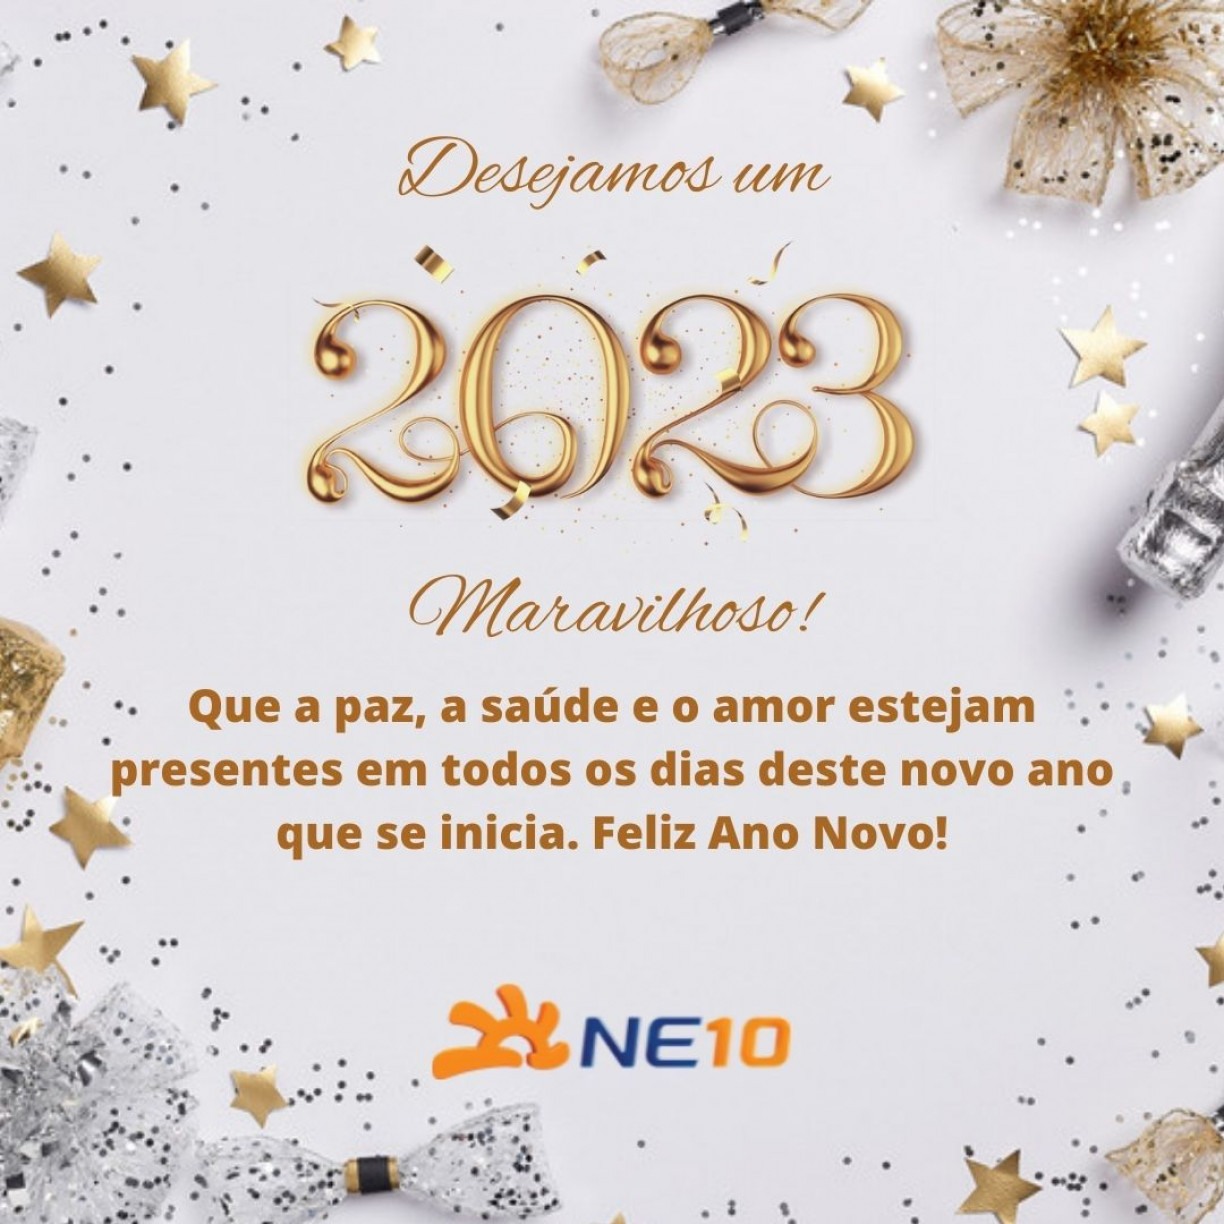 MENSAGEM DE ANO NOVO 2023 PARA A FAMÍLIA: Confira imagens de Feliz Ano novo  2023 para mandar aos amigos e familiares